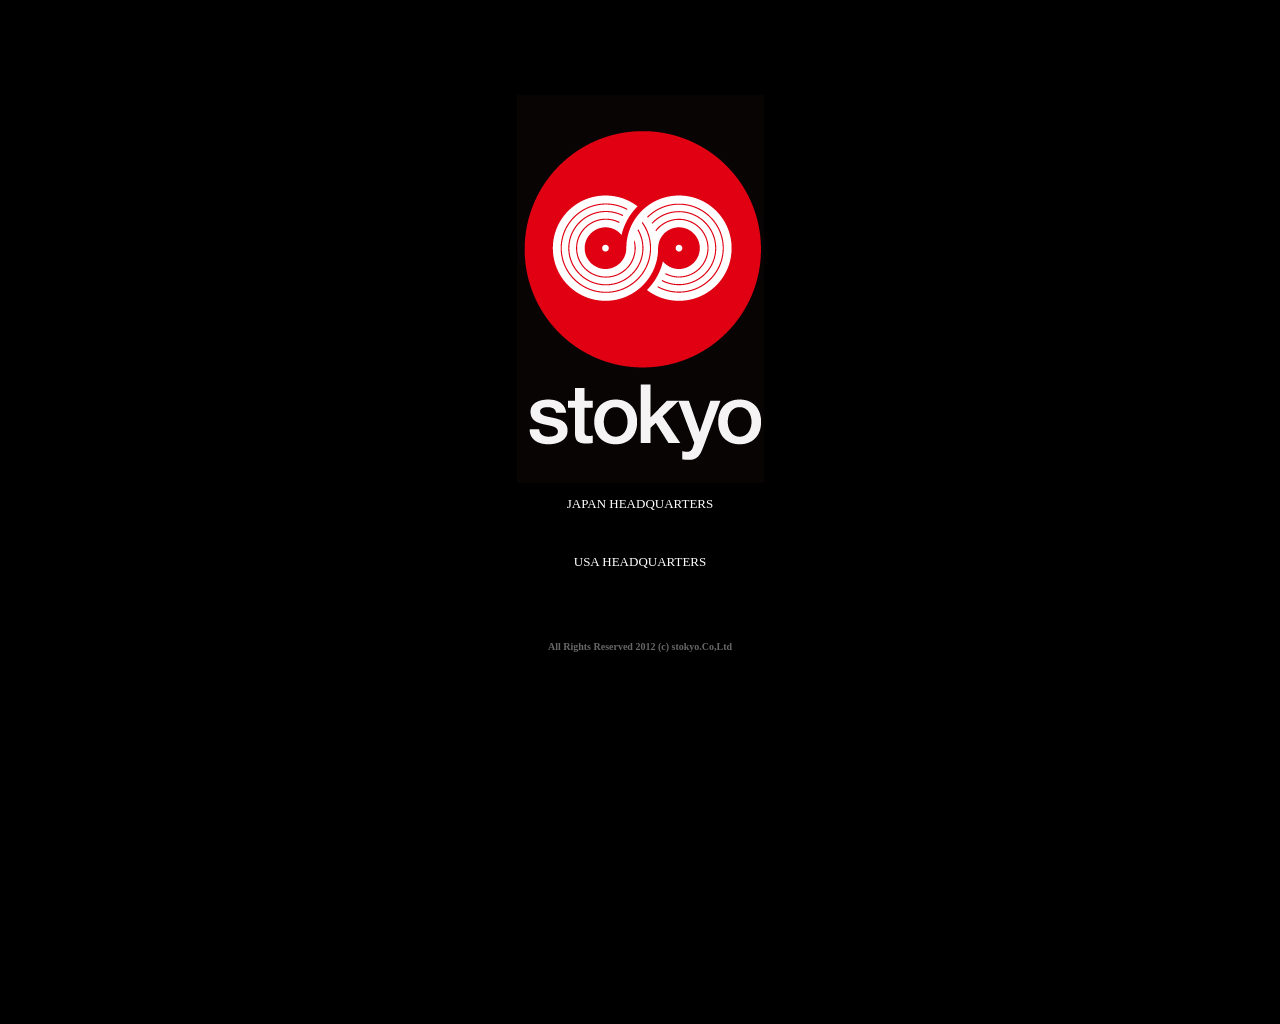 stokyo.com